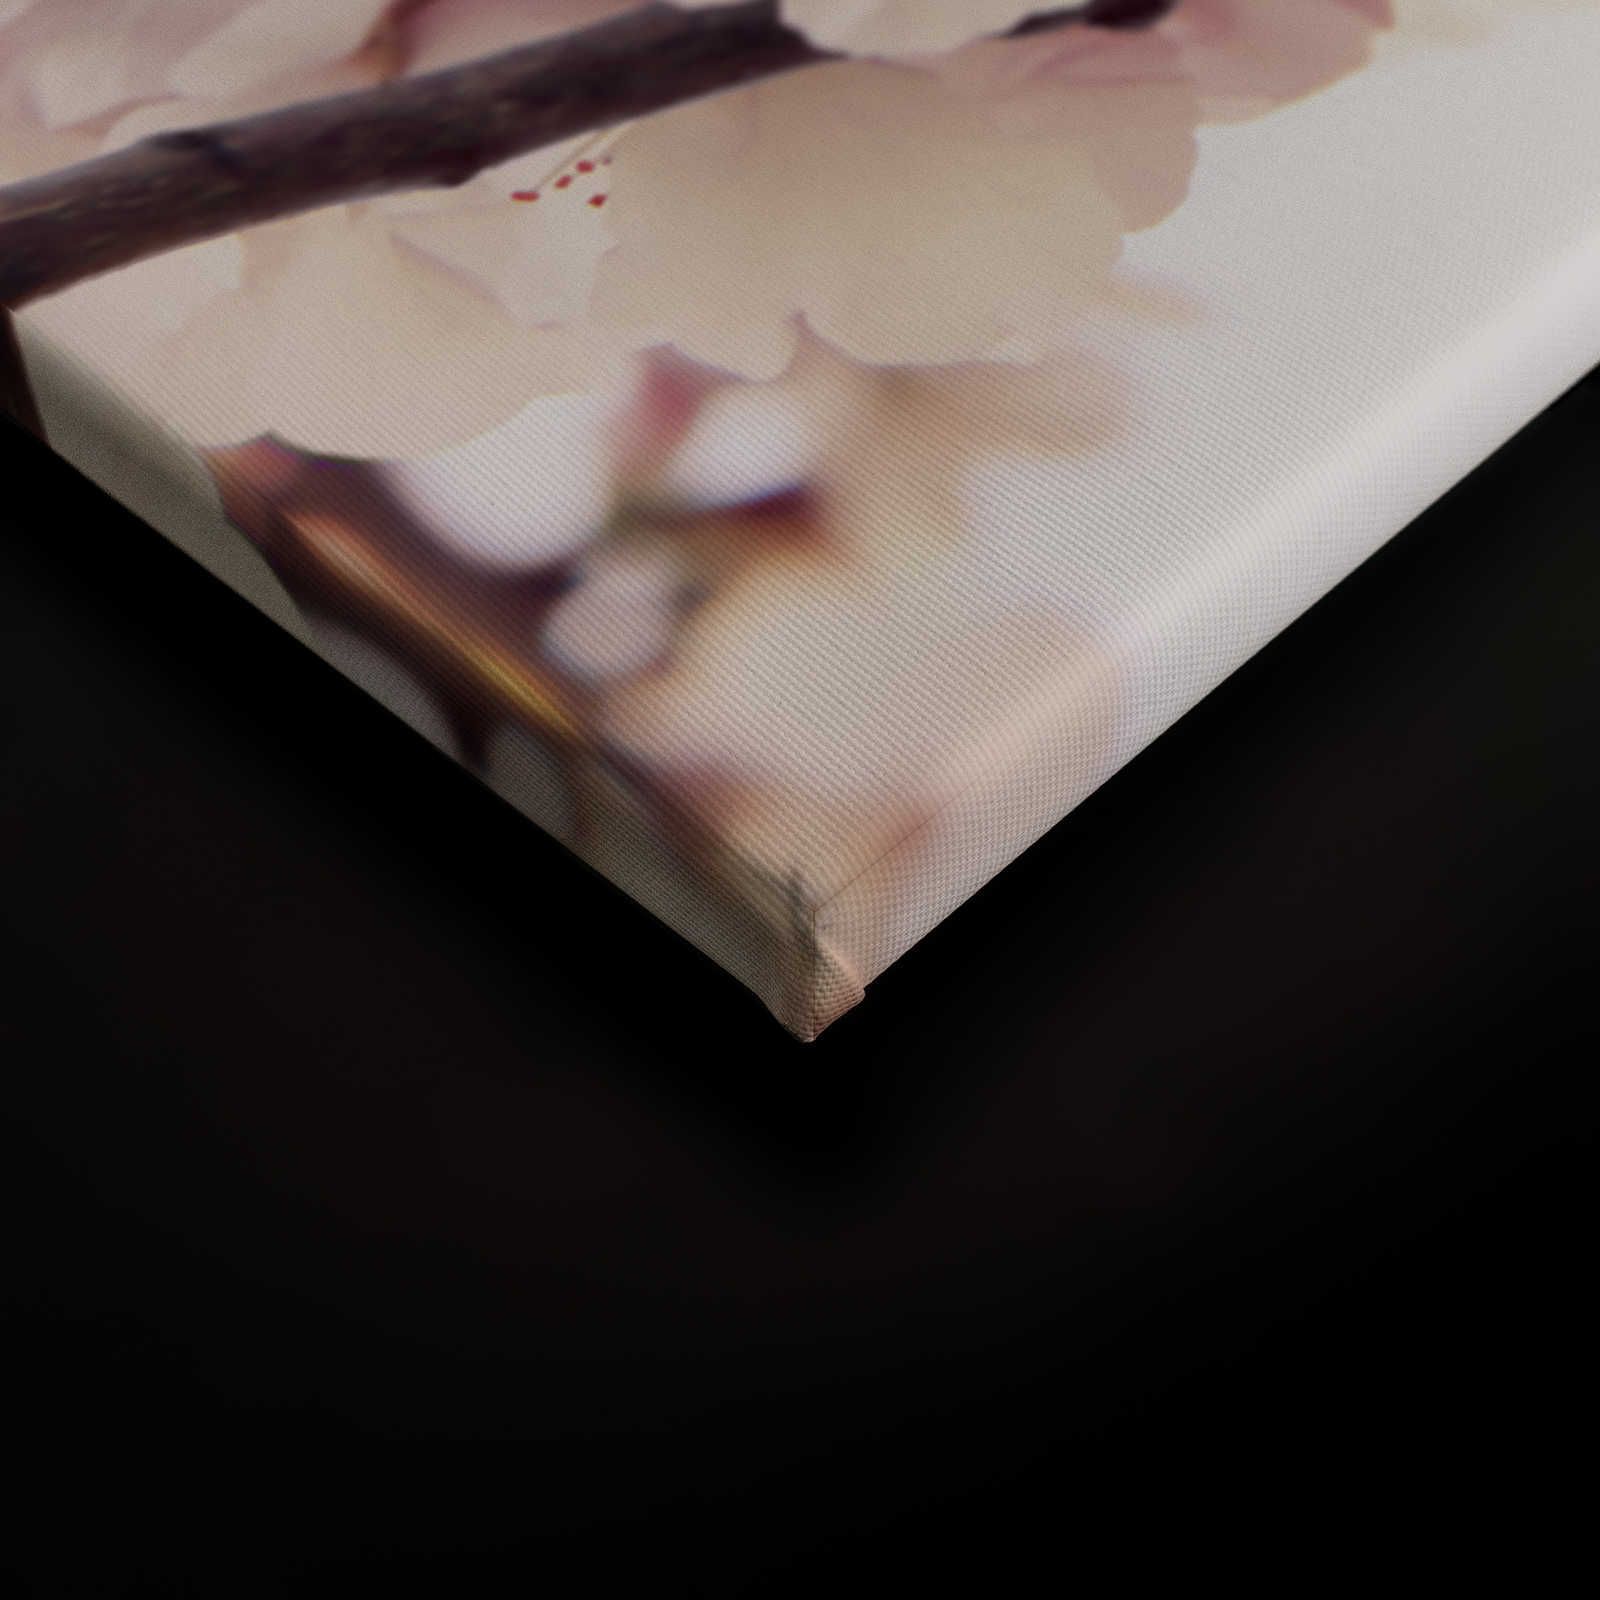             Pittura su tela della natura con fiori di ciliegio - 1,20 m x 0,80 m
        